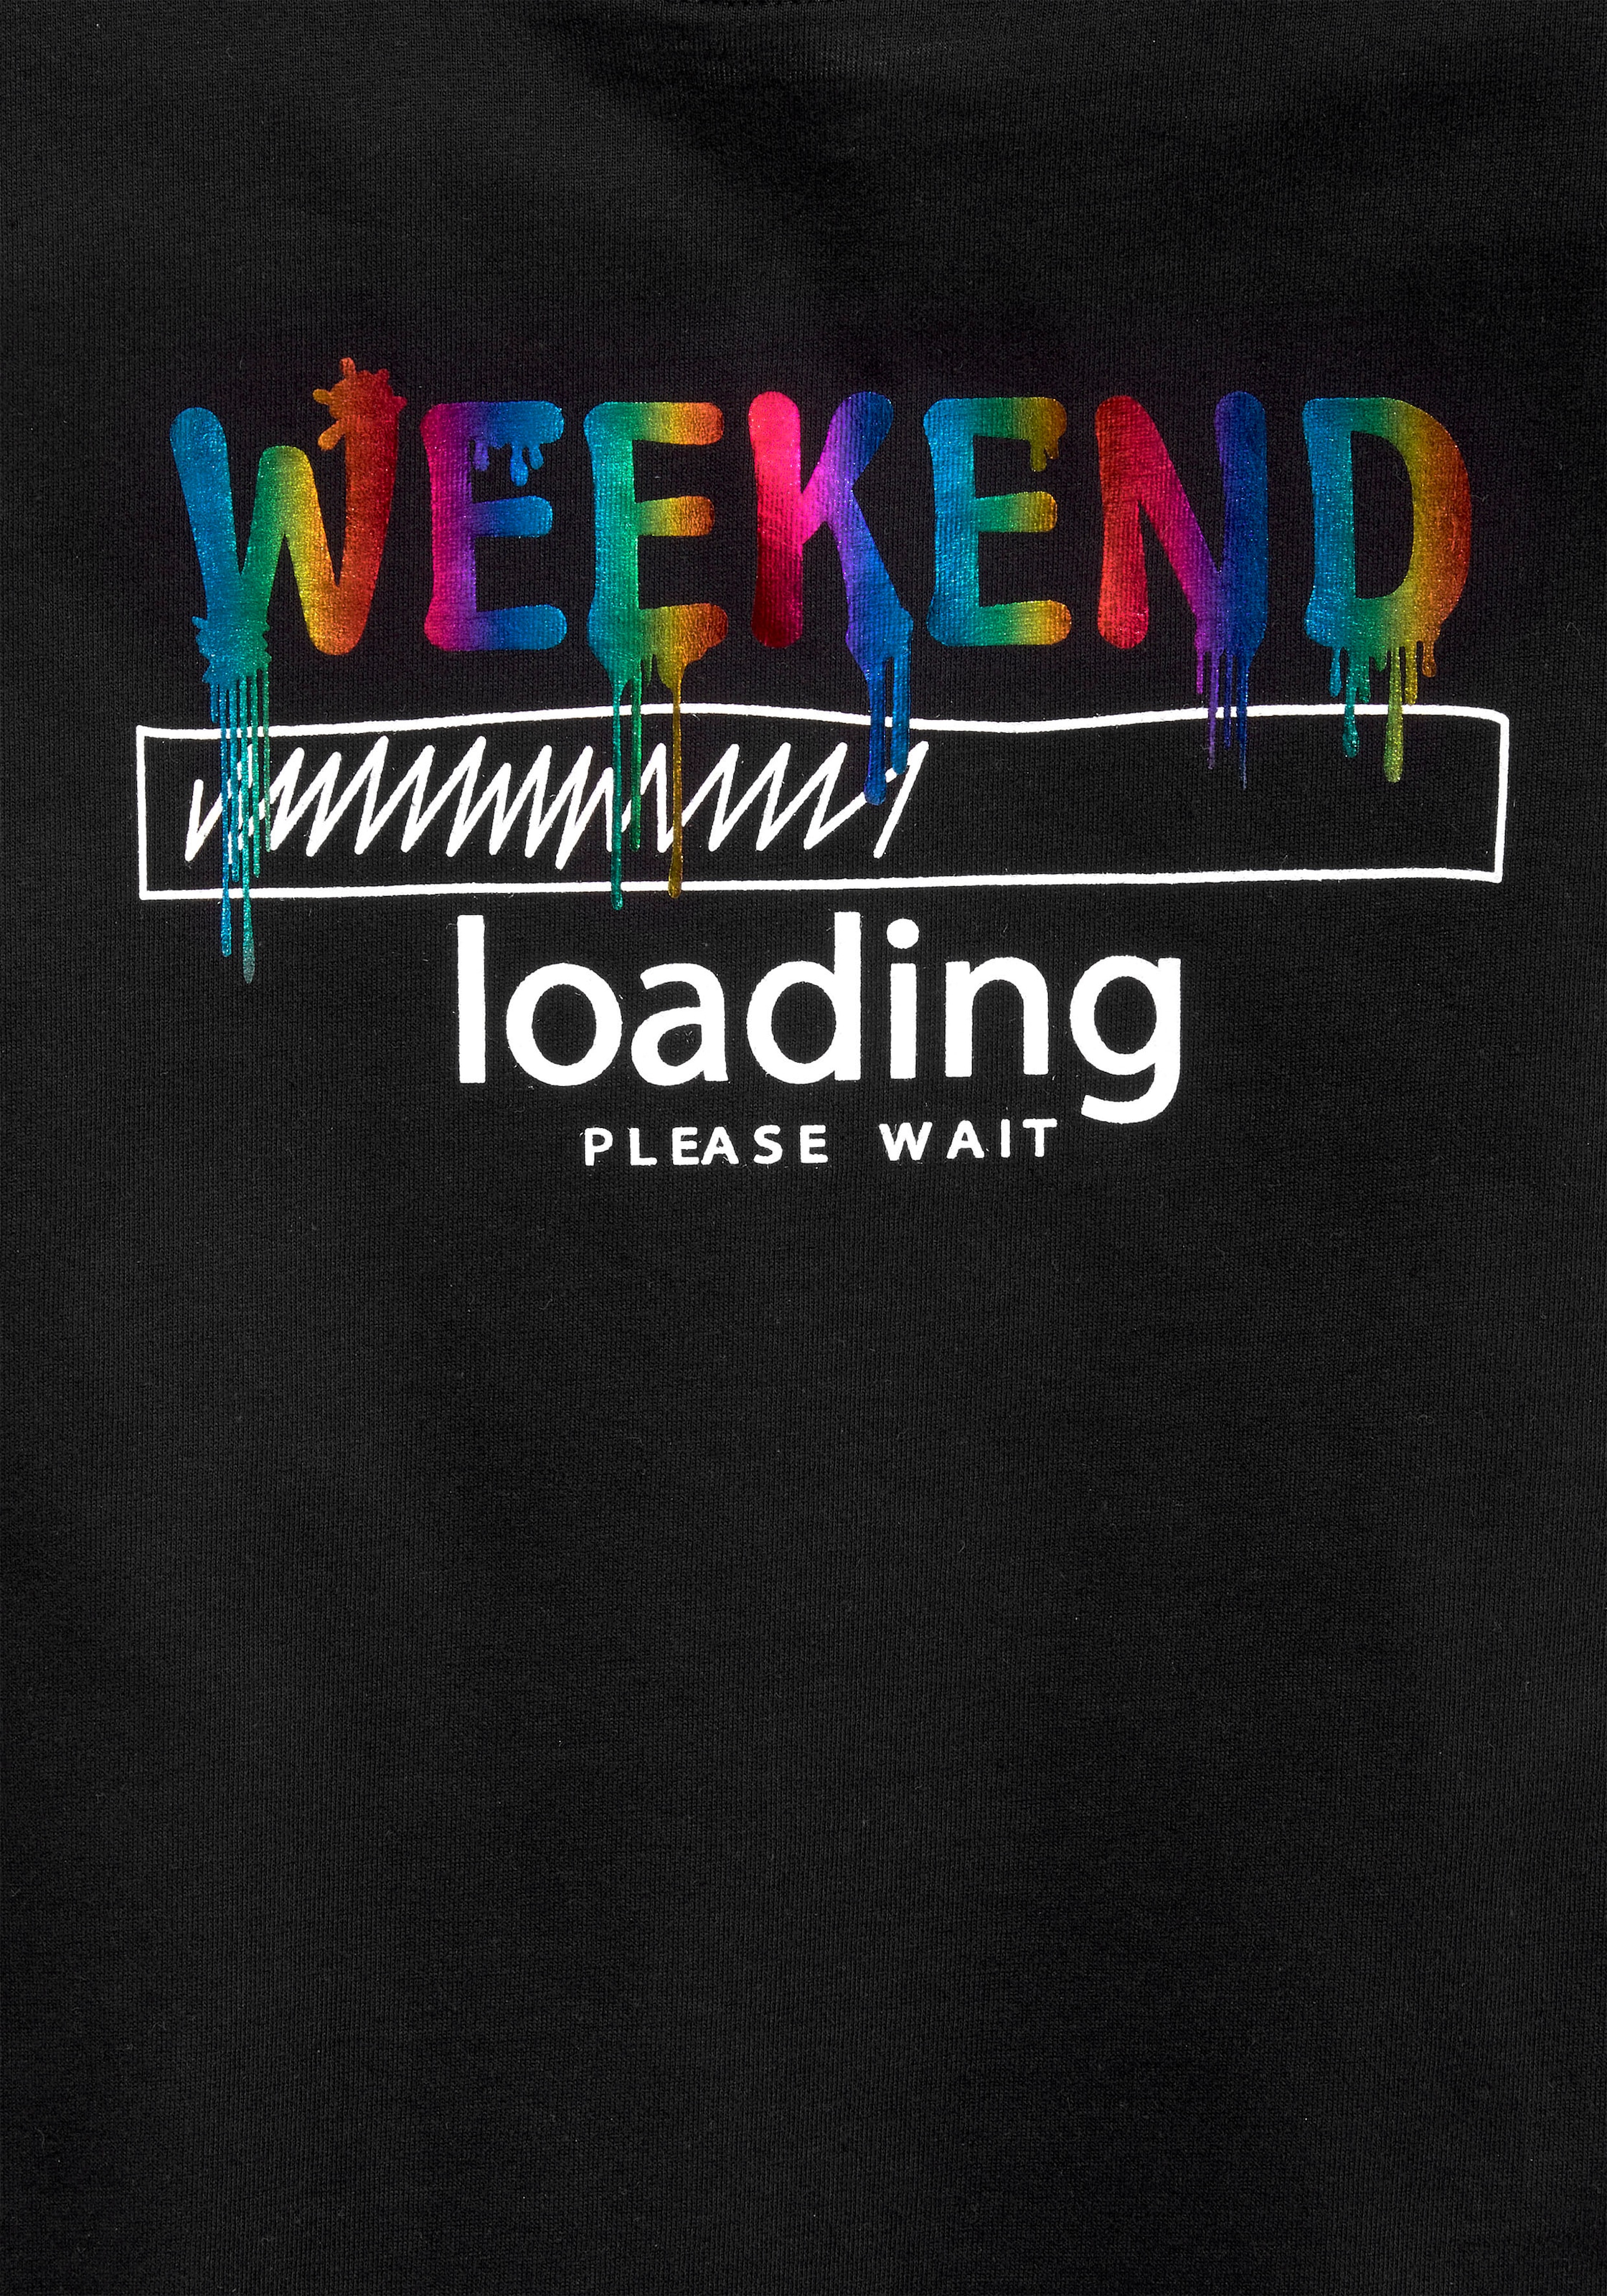 KIDSWORLD T-Shirt »WEEKEND loading...please wait«, in weiter legerer Form, Regenbogen-Druckfarben sind unterschiedlich